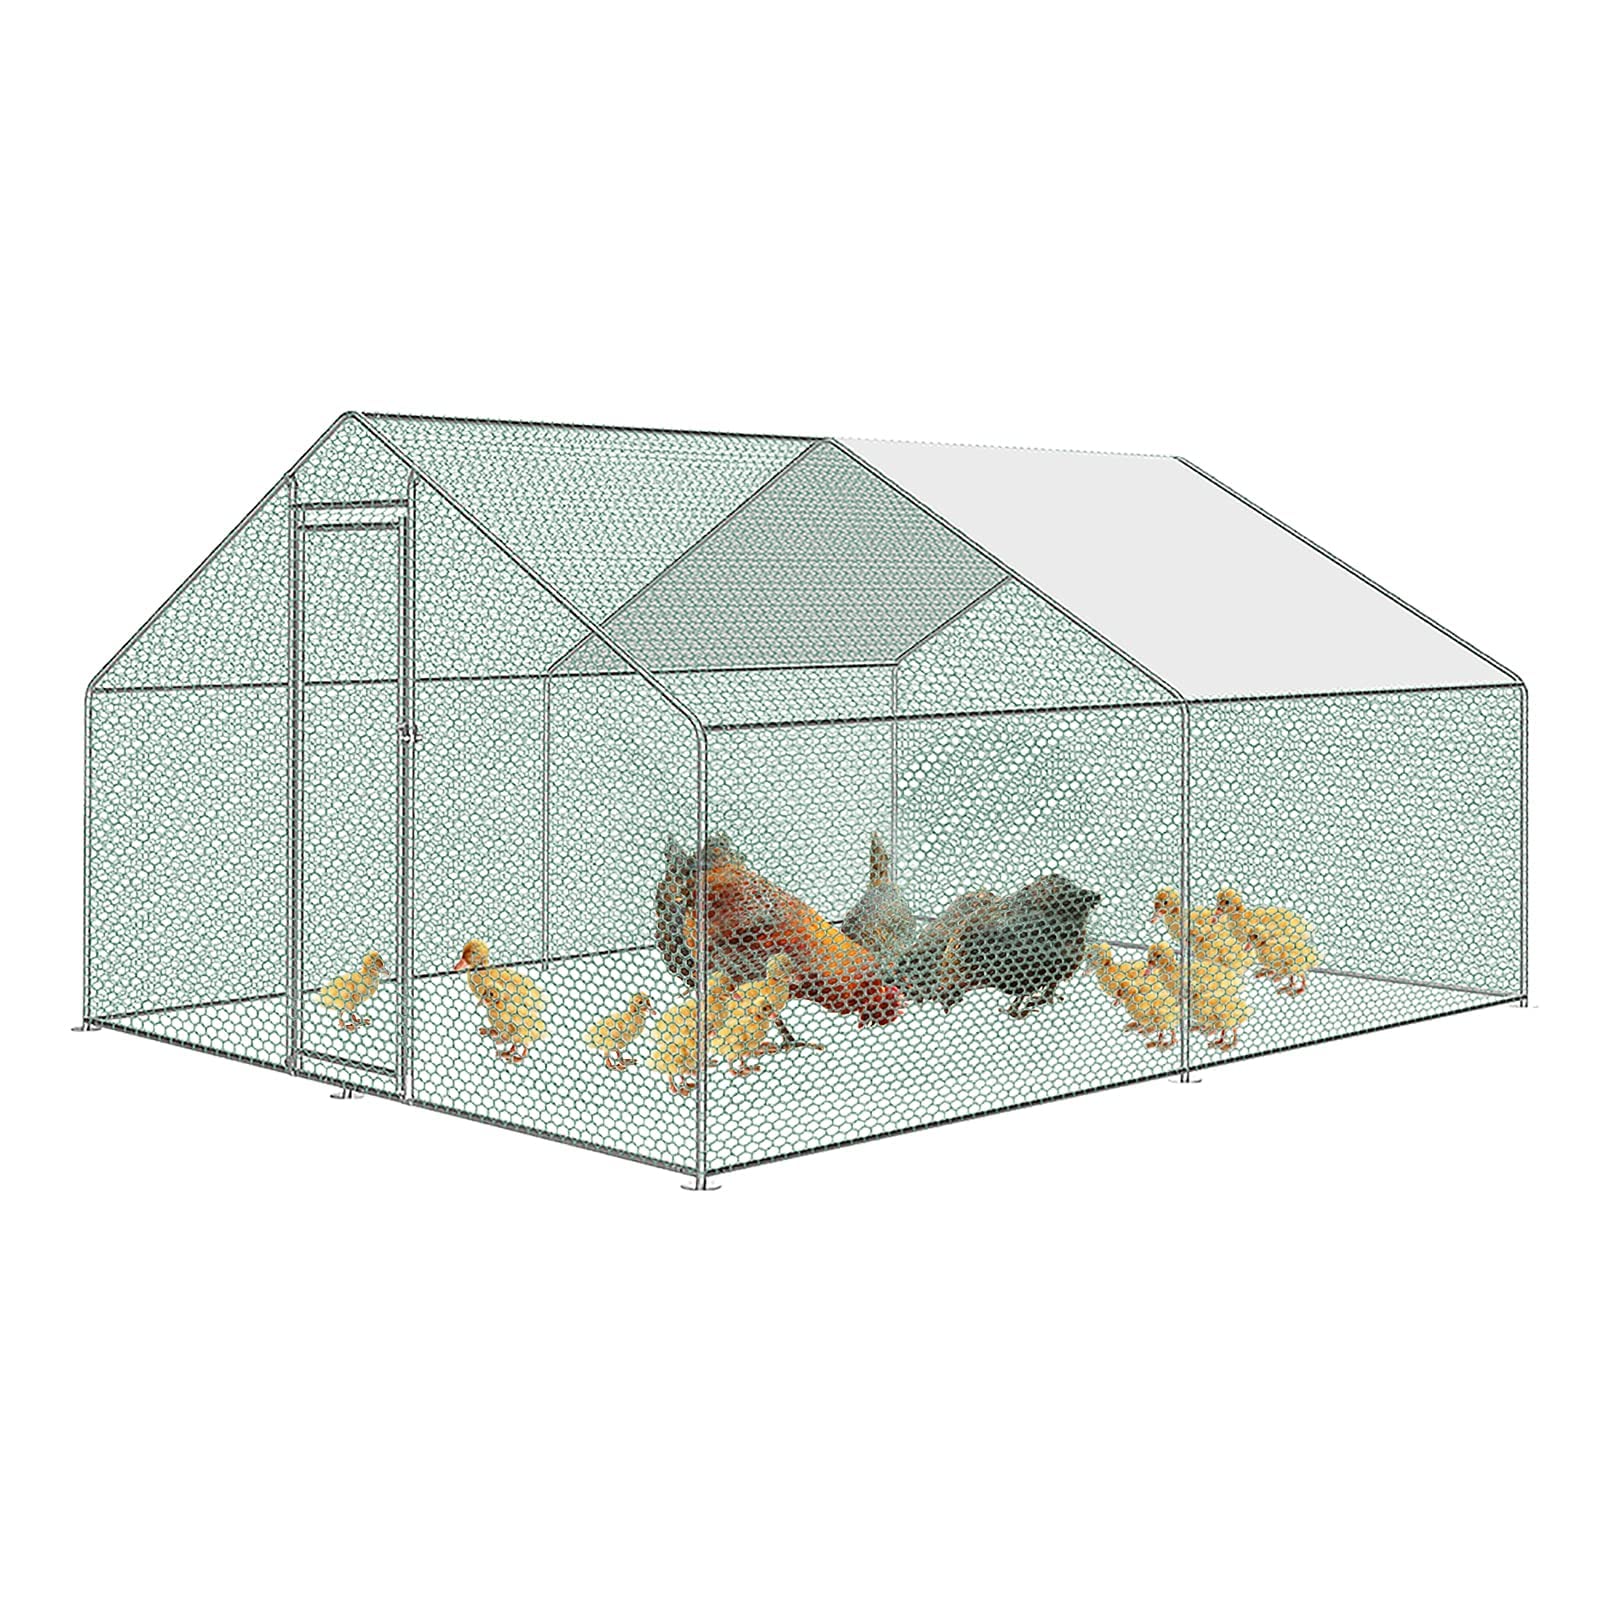 Froadp 3x4x2m Hühnerkäfig Außengehege Freilaufgehege Hühner Verzinkter Stahlrahmen mit PE Sonnenschutzdach und Schloss 12㎡Hühnerstall Hasenstall Geflügelhaltung Käfig Kleintiergehege Voliere